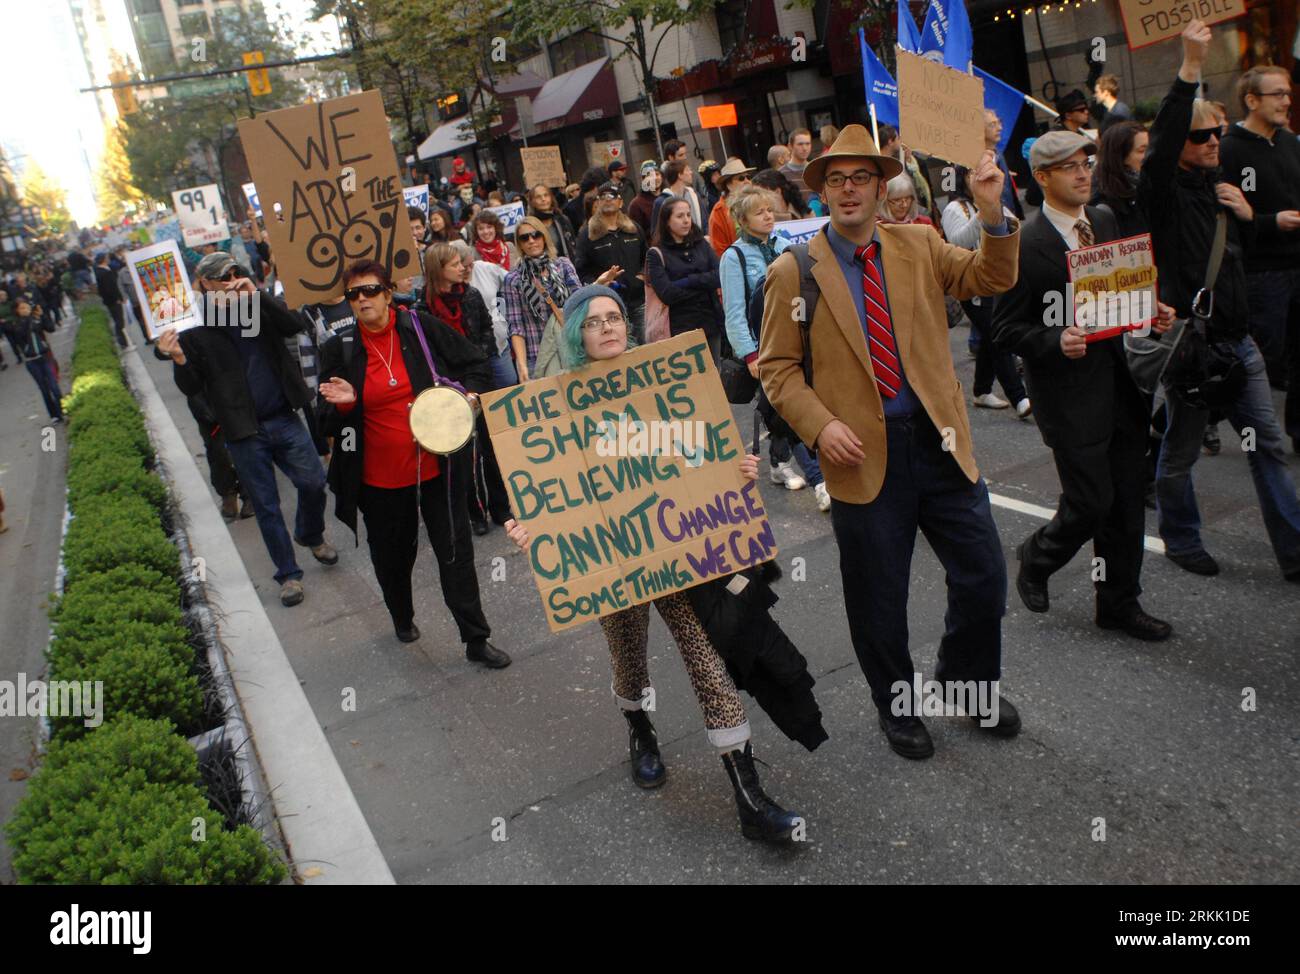 Bildnummer : 56184186 Datum : 15.10.2011 Copyright : imago/Xinhua (111016) -- VANCOUVER, 16 octobre 2011 (Xinhua) -- des manifestants défilent lors de la manifestation Occupy Vancouver à Vancouver, Canada, le 15 octobre 2011. Les manifestations Occupy Wall Street (OWS), qui ciblaient initialement la cupidité des entreprises, et leurs ramifications dans une solidarité pour l'action mondiale samedi se sont propagées dans des villes dans plus de 80 pays à travers le monde. (Xinhua/Sergei Bachlakov) CANADA-VANCOUVER-OCCUPY PROTEST PUBLICATIONxNOTxINxCHN Gesellschaft Politik Wirtschaft Demo Finanzkrise Finanzwirtschaftskrise Krise Banken x Banque D'Images